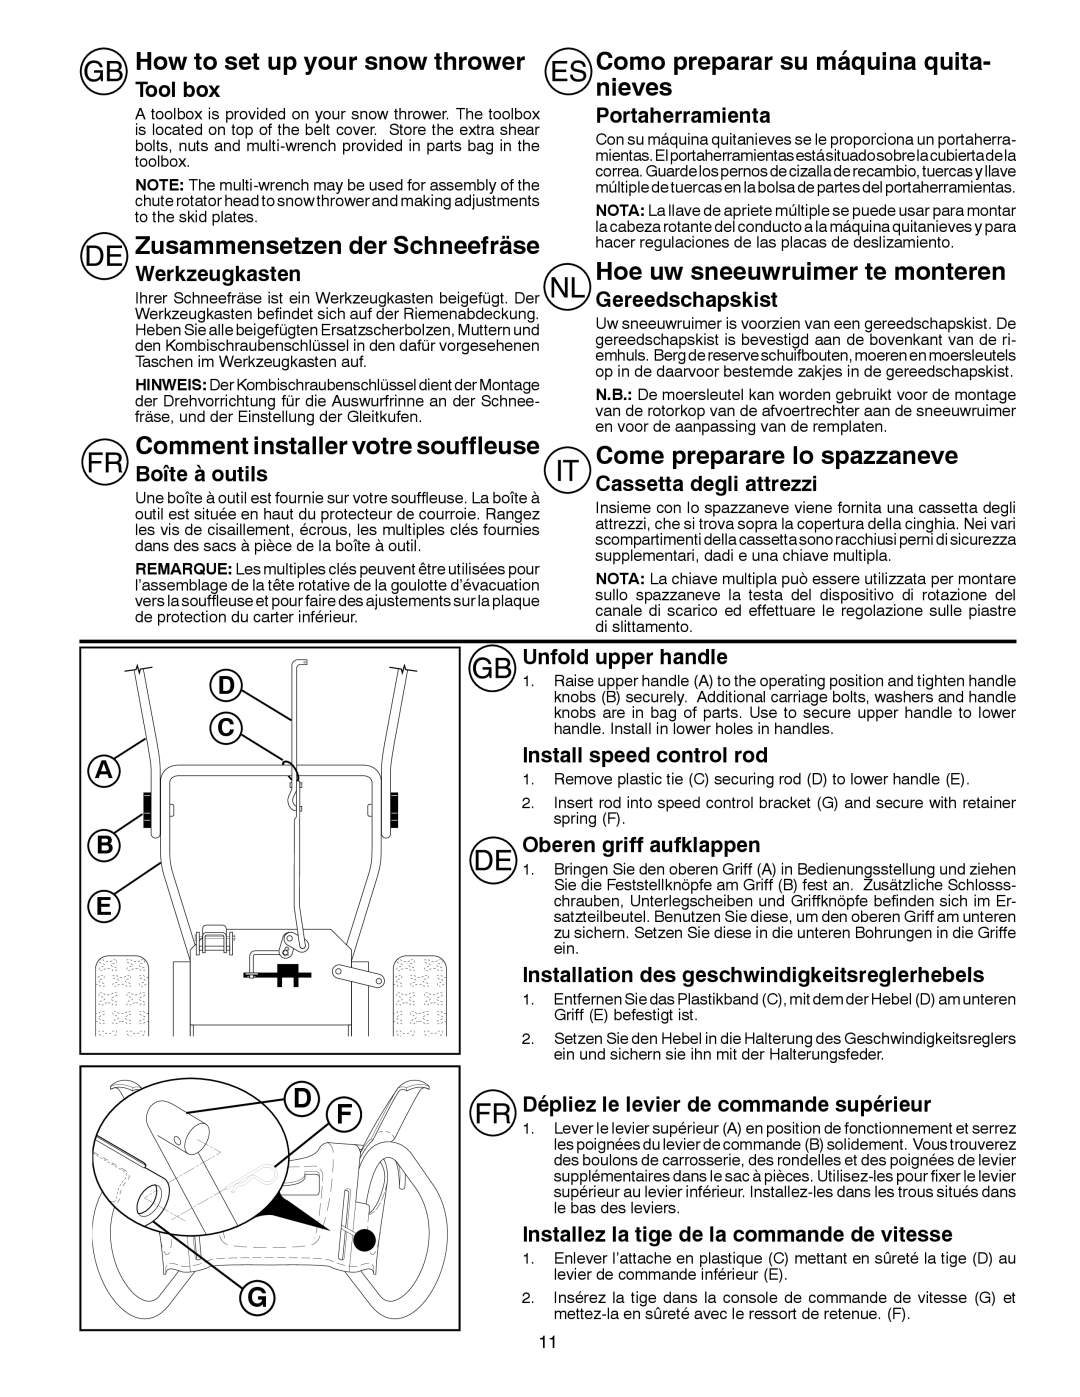 Husqvarna ST 276EP How to set up your snow thrower, Zusammensetzen der Schneefräse, Comment installer votre souffleuse 